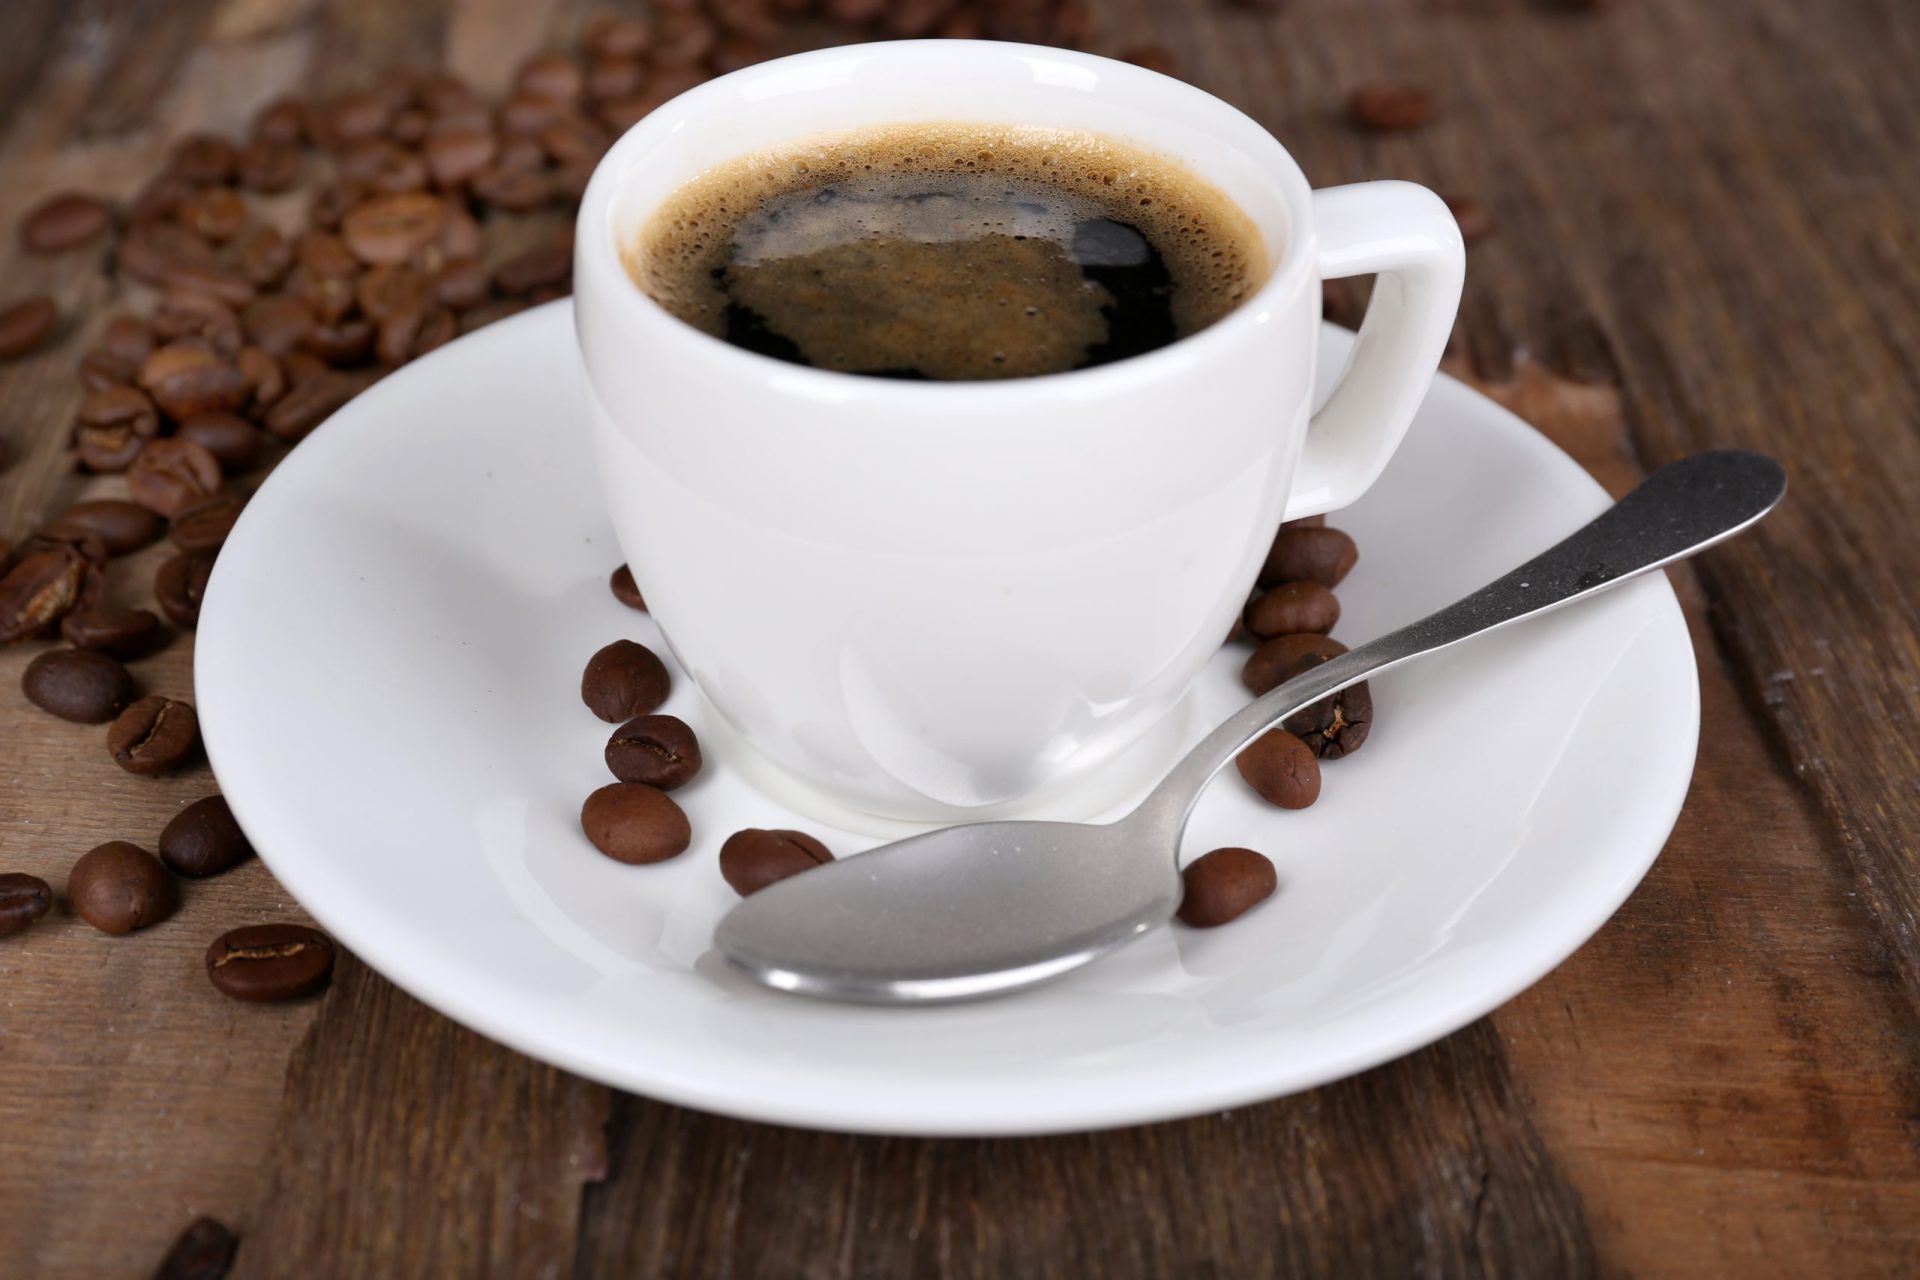 Nespresso explora novas formas de consumir café